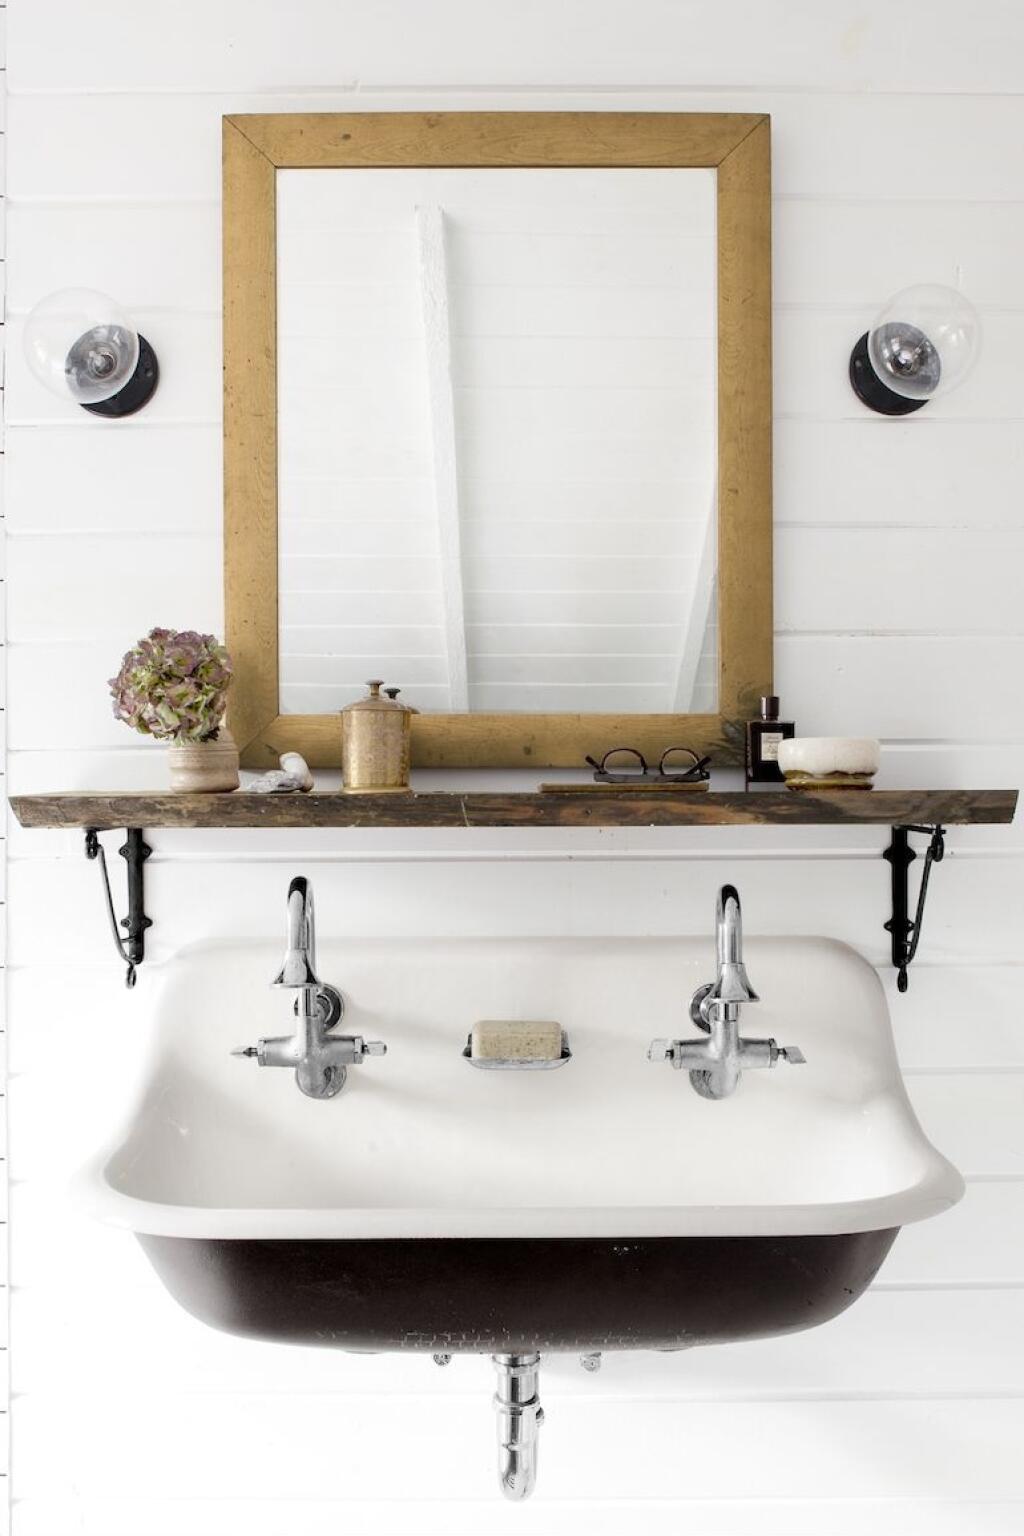 Những ai yêu thích phong cách tối giản hoàn toàn có thể ứng dụng kiểu thiết kế này để phòng tắm nhỏ gọn, xinh xắn.